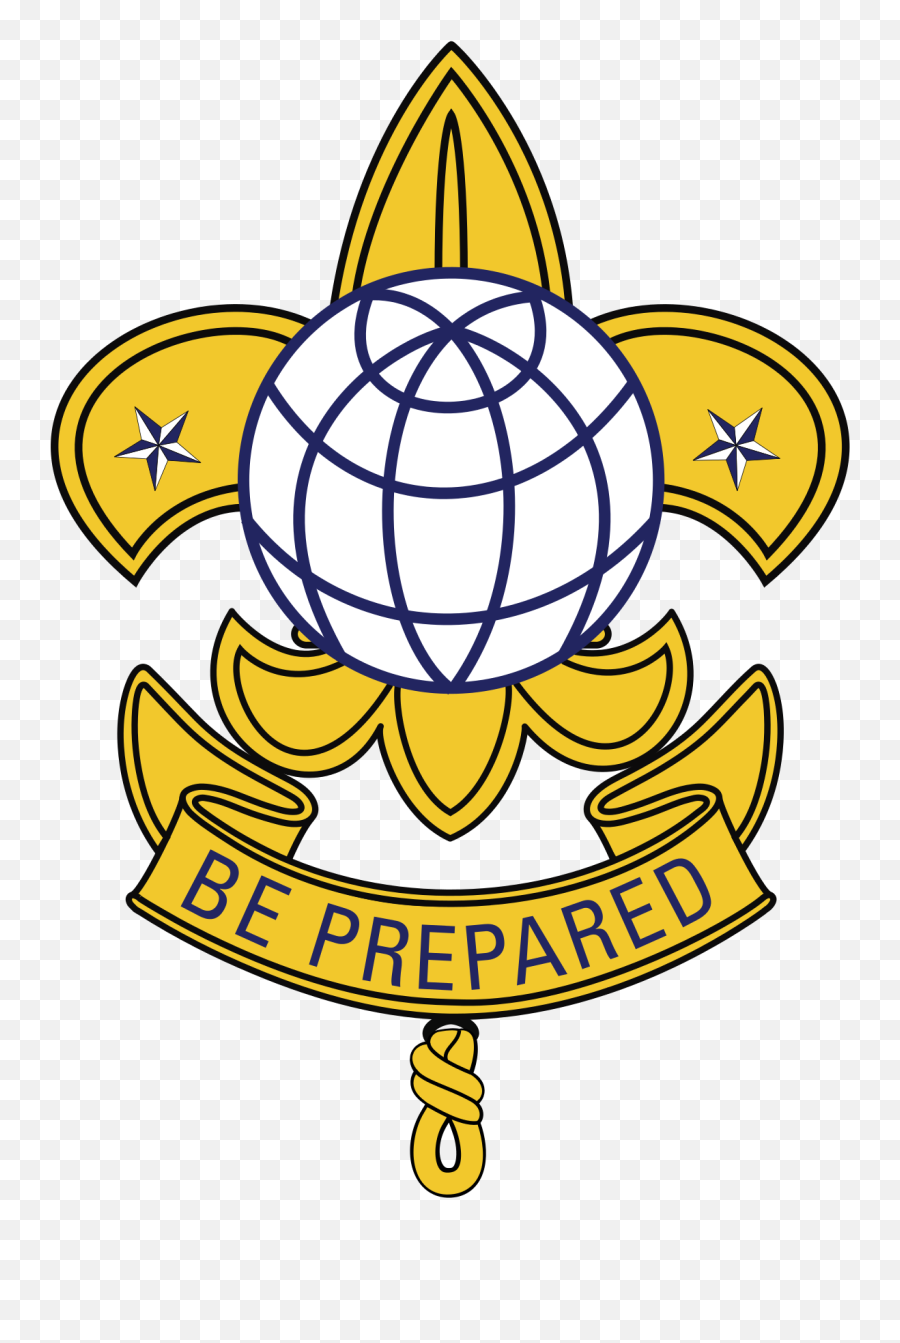 International Boy Scouts Troop 1 - International Boy Scout Troop 1 Png,Boy Scout Logo Png